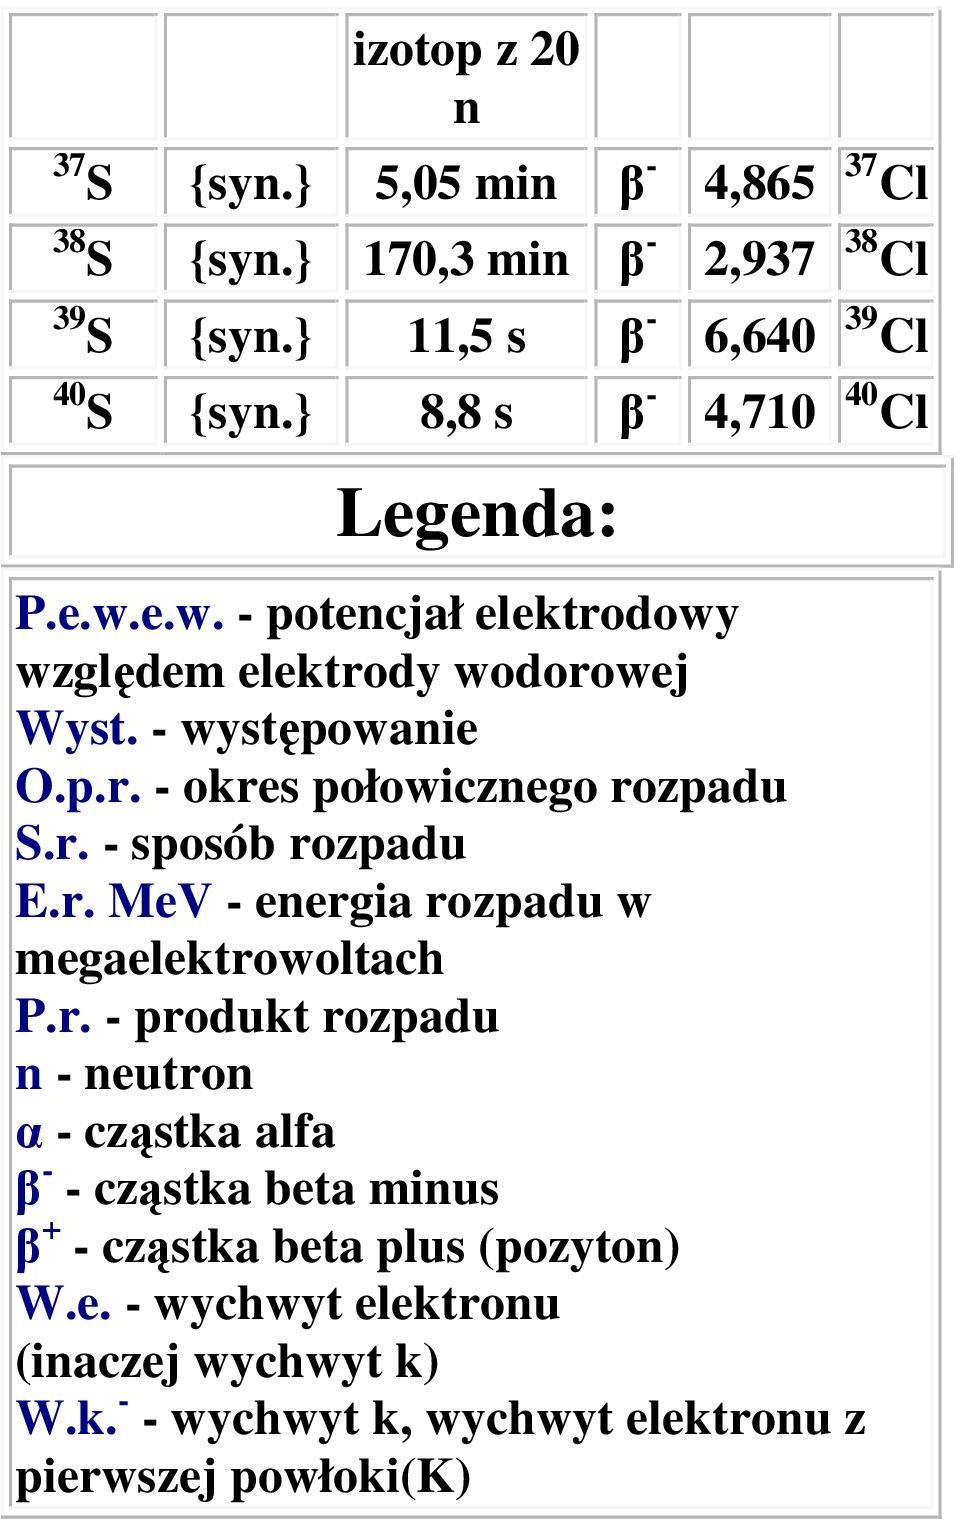 r. - sposób rozpadu E.r. MeV - eergia rozpadu w megaelektrowoltach P.r. - produkt rozpadu - eutro α - cząstka alfa β - - cząstka beta mius β + - cząstka beta plus (pozyto) W.